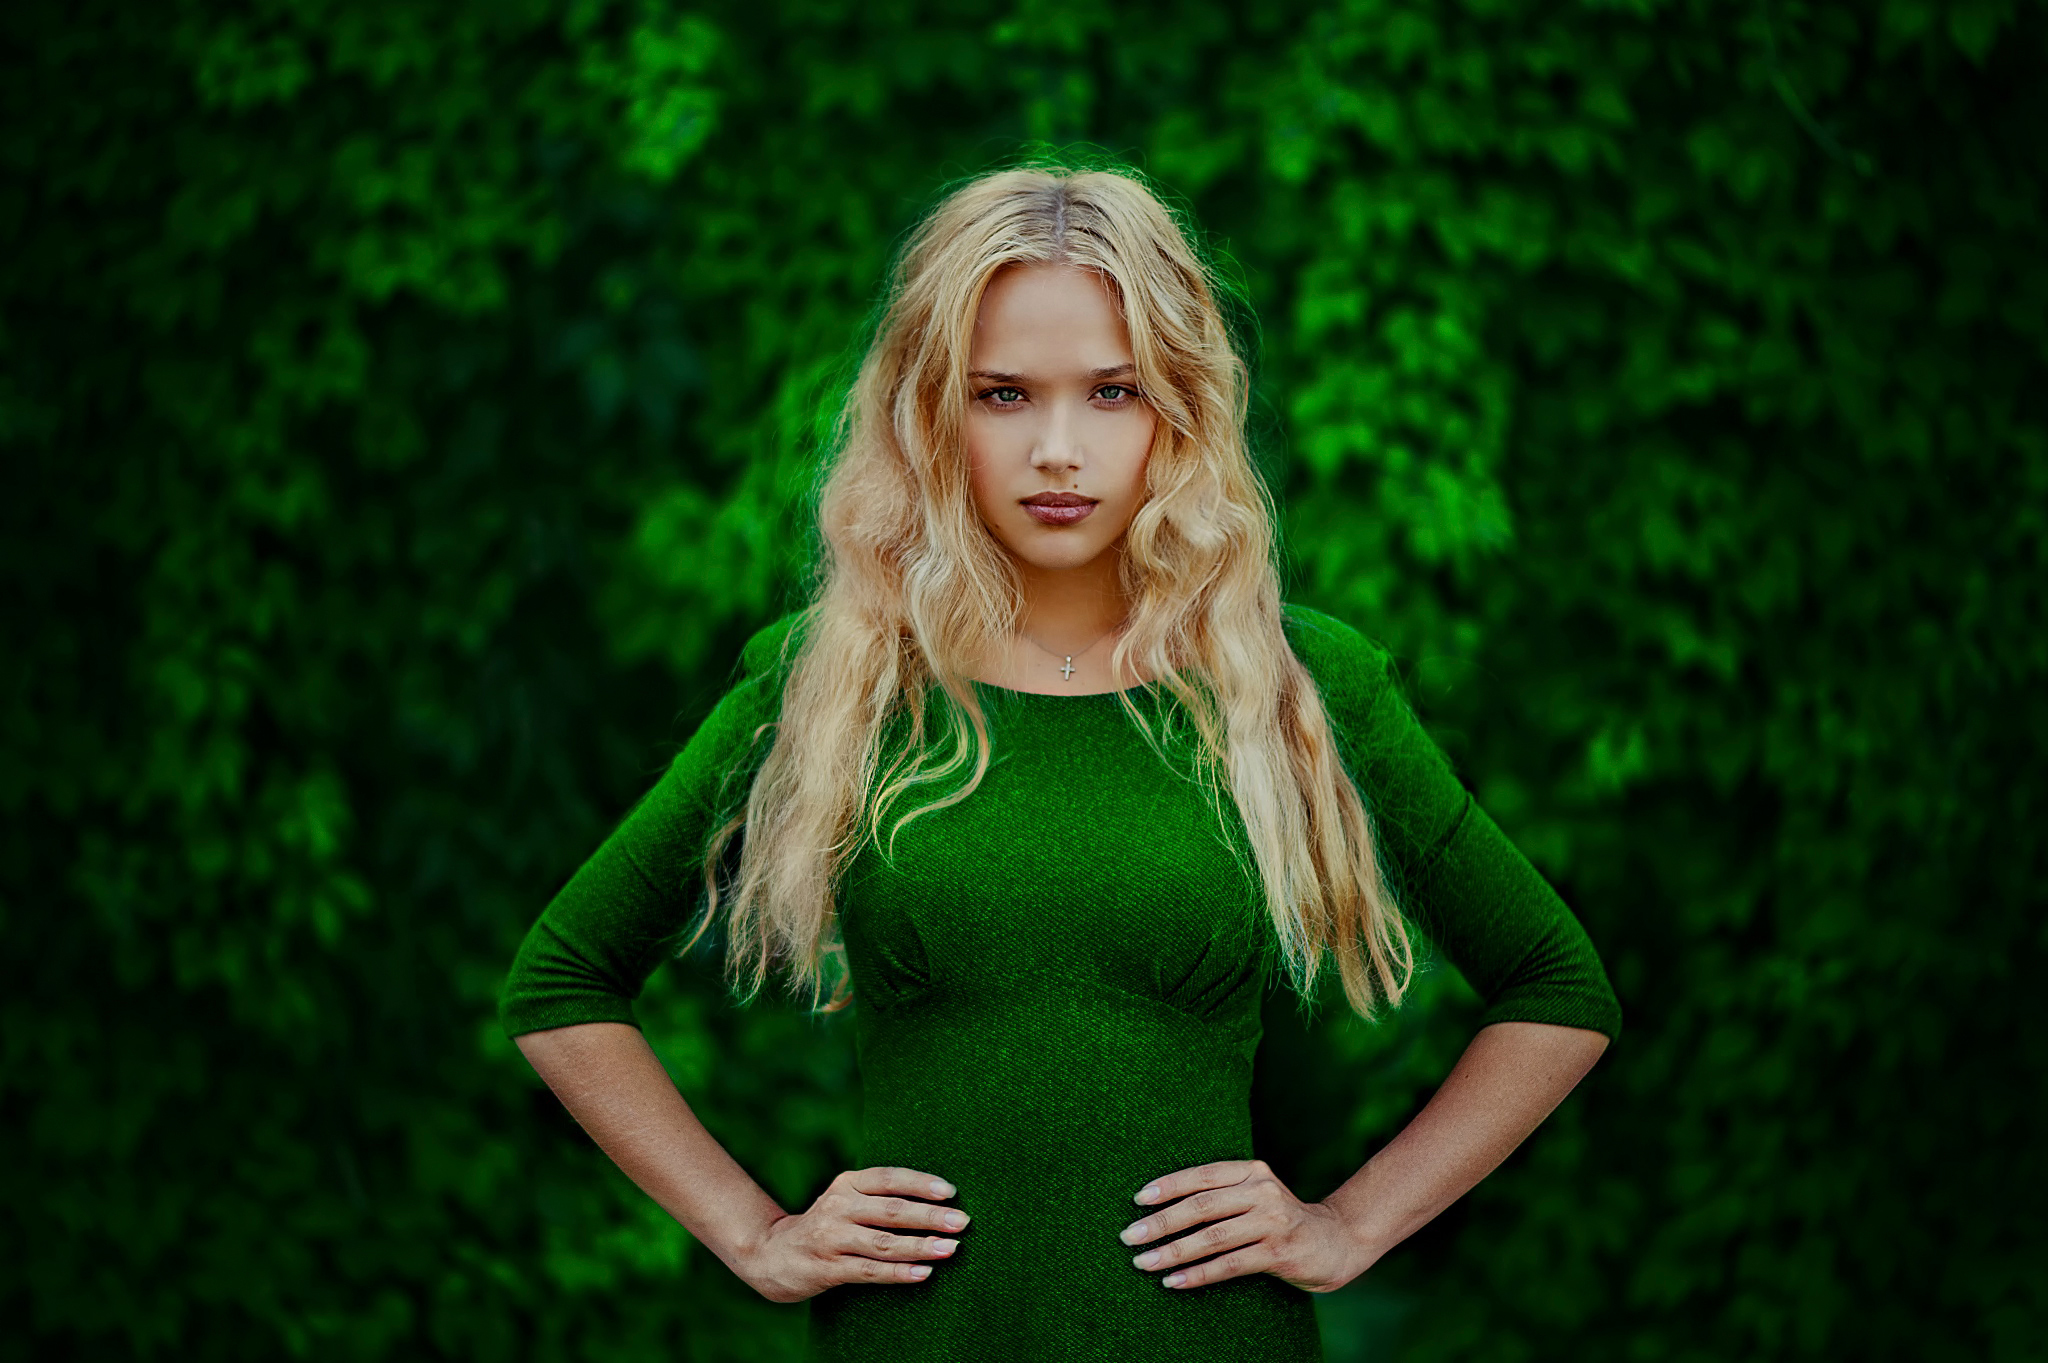 Фото изумительной блонды в зелени